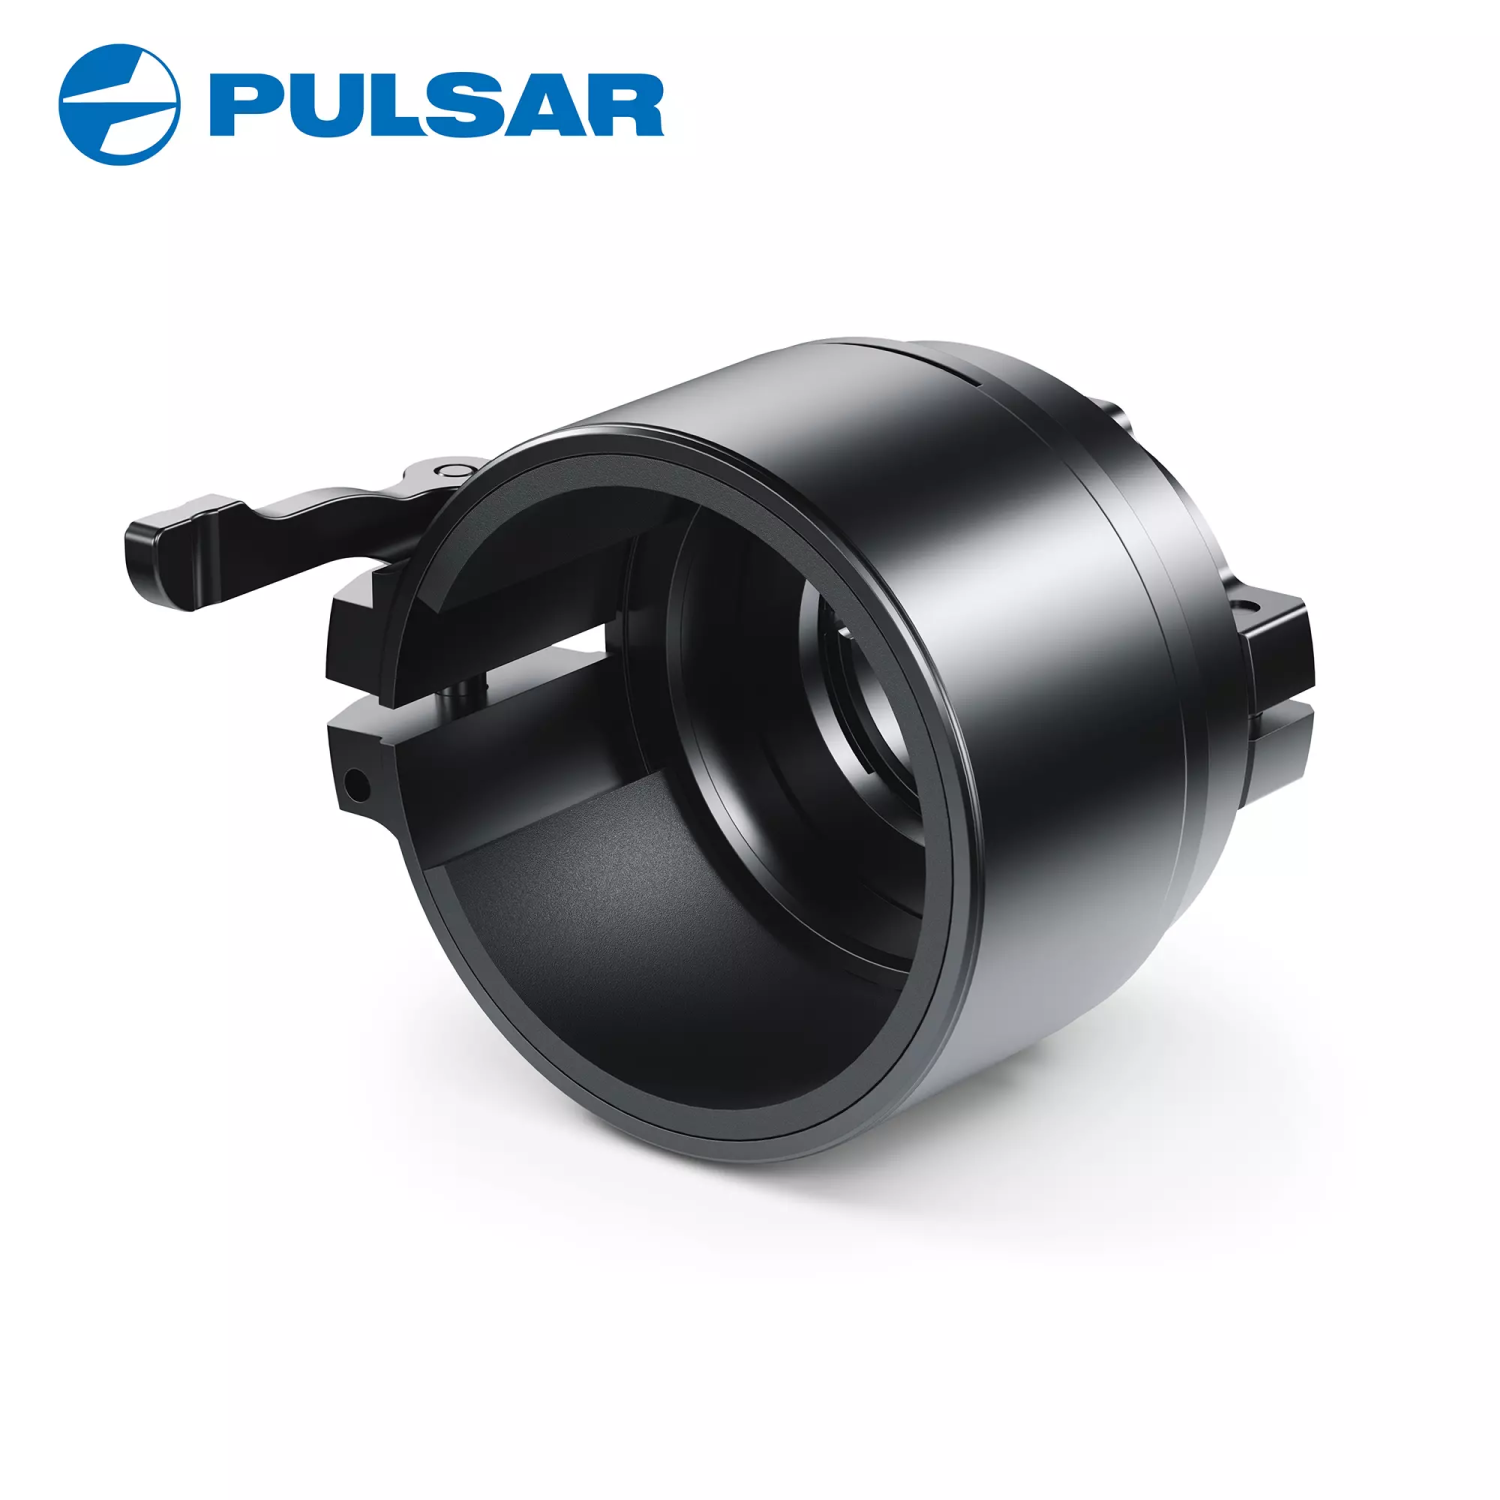 Pulsar PSP-56 Adapter Ring